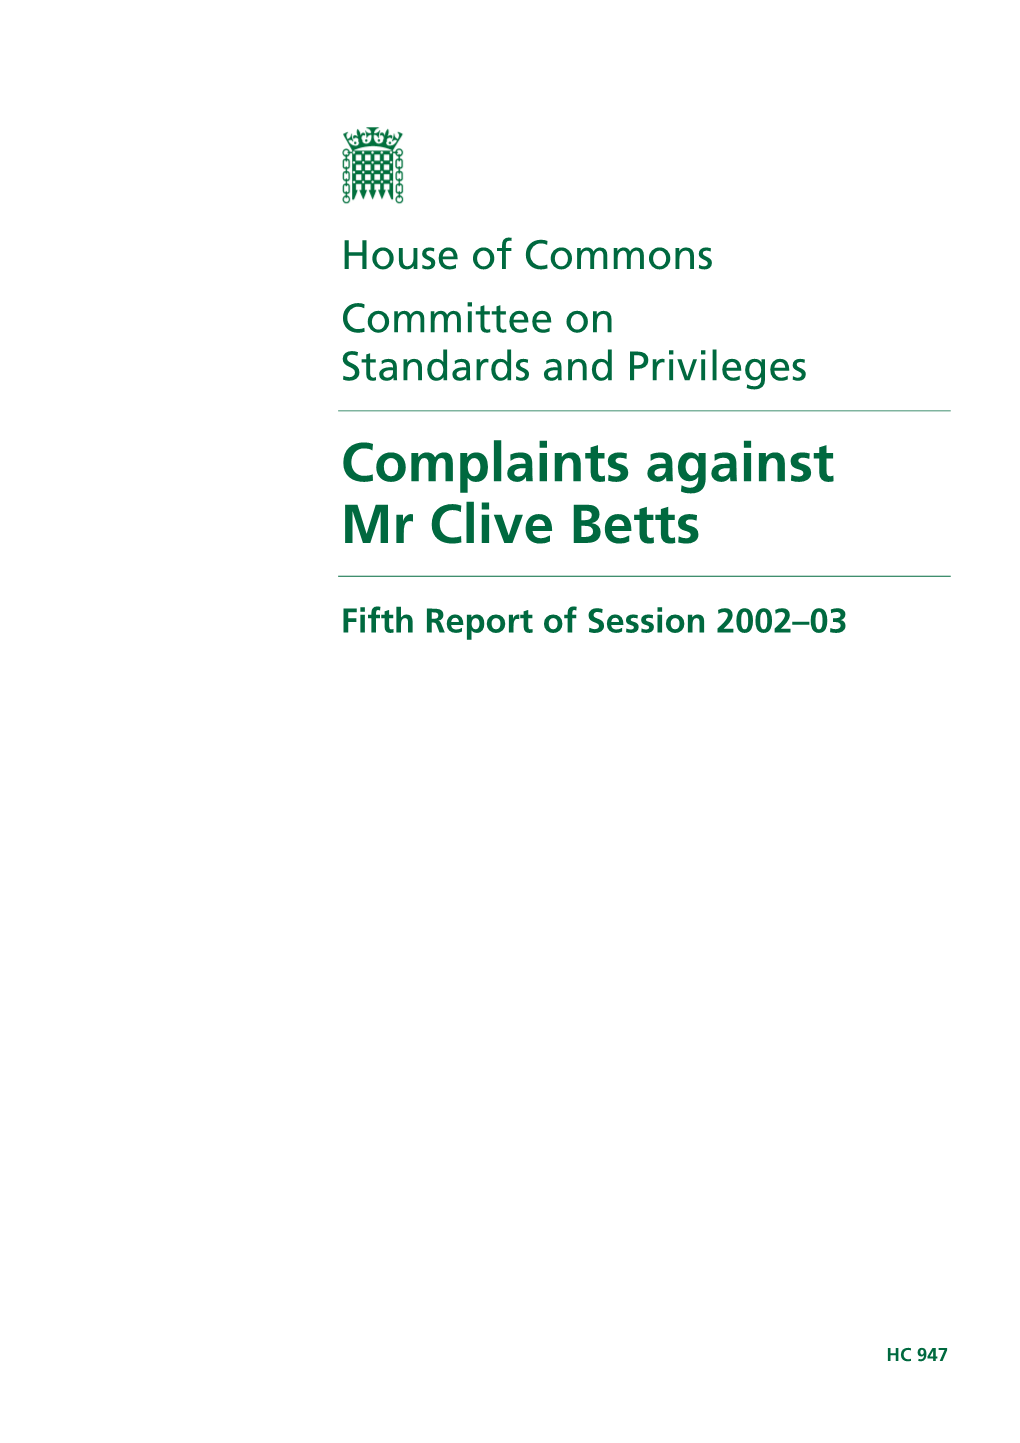 Complaints Against Mr Clive Betts